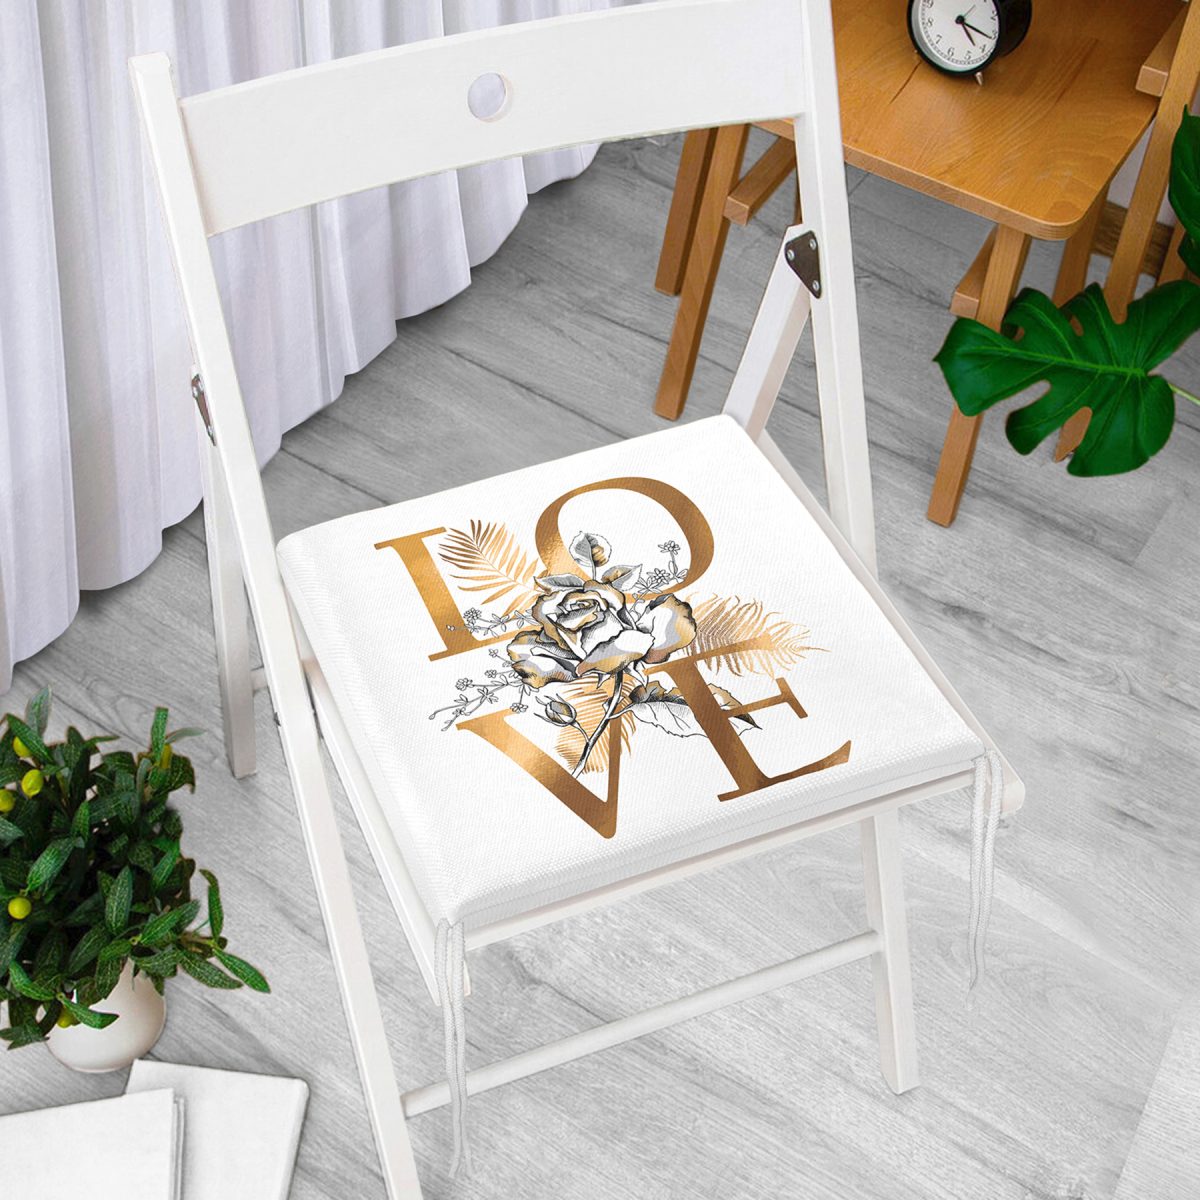 Altın Varaklı Love Tasarımlı Modern Dekoratif Fermuarlı Sandalye Minderi Realhomes